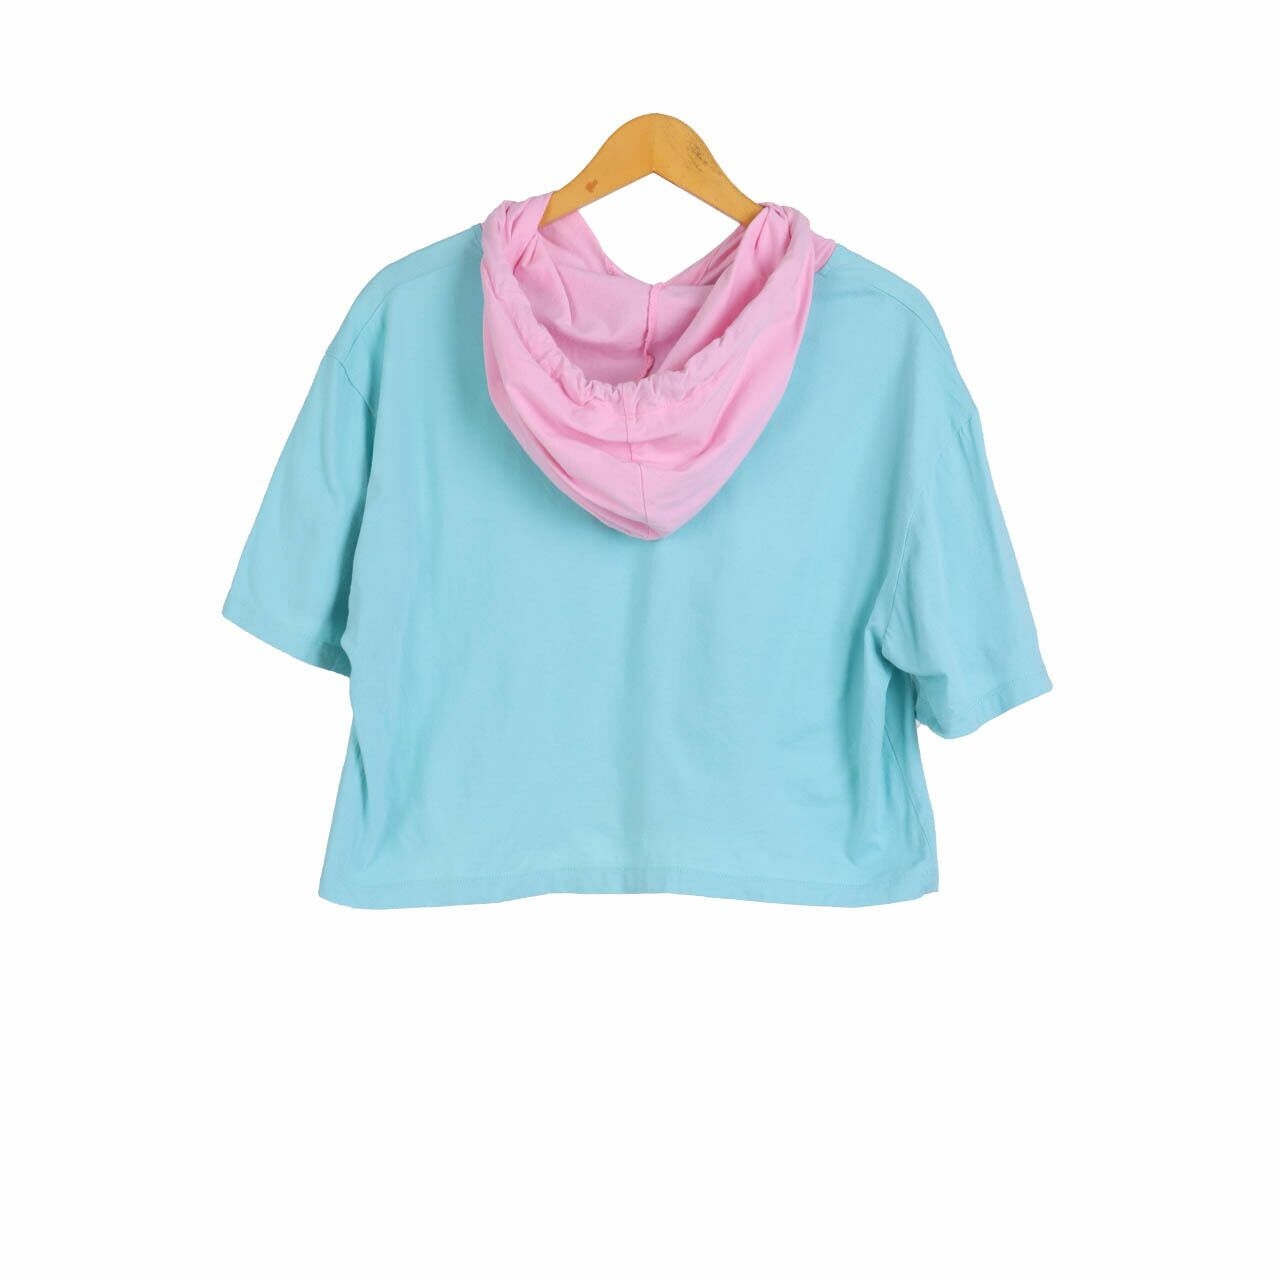 mky Pink & Light Blue T-Shirt Hoodie